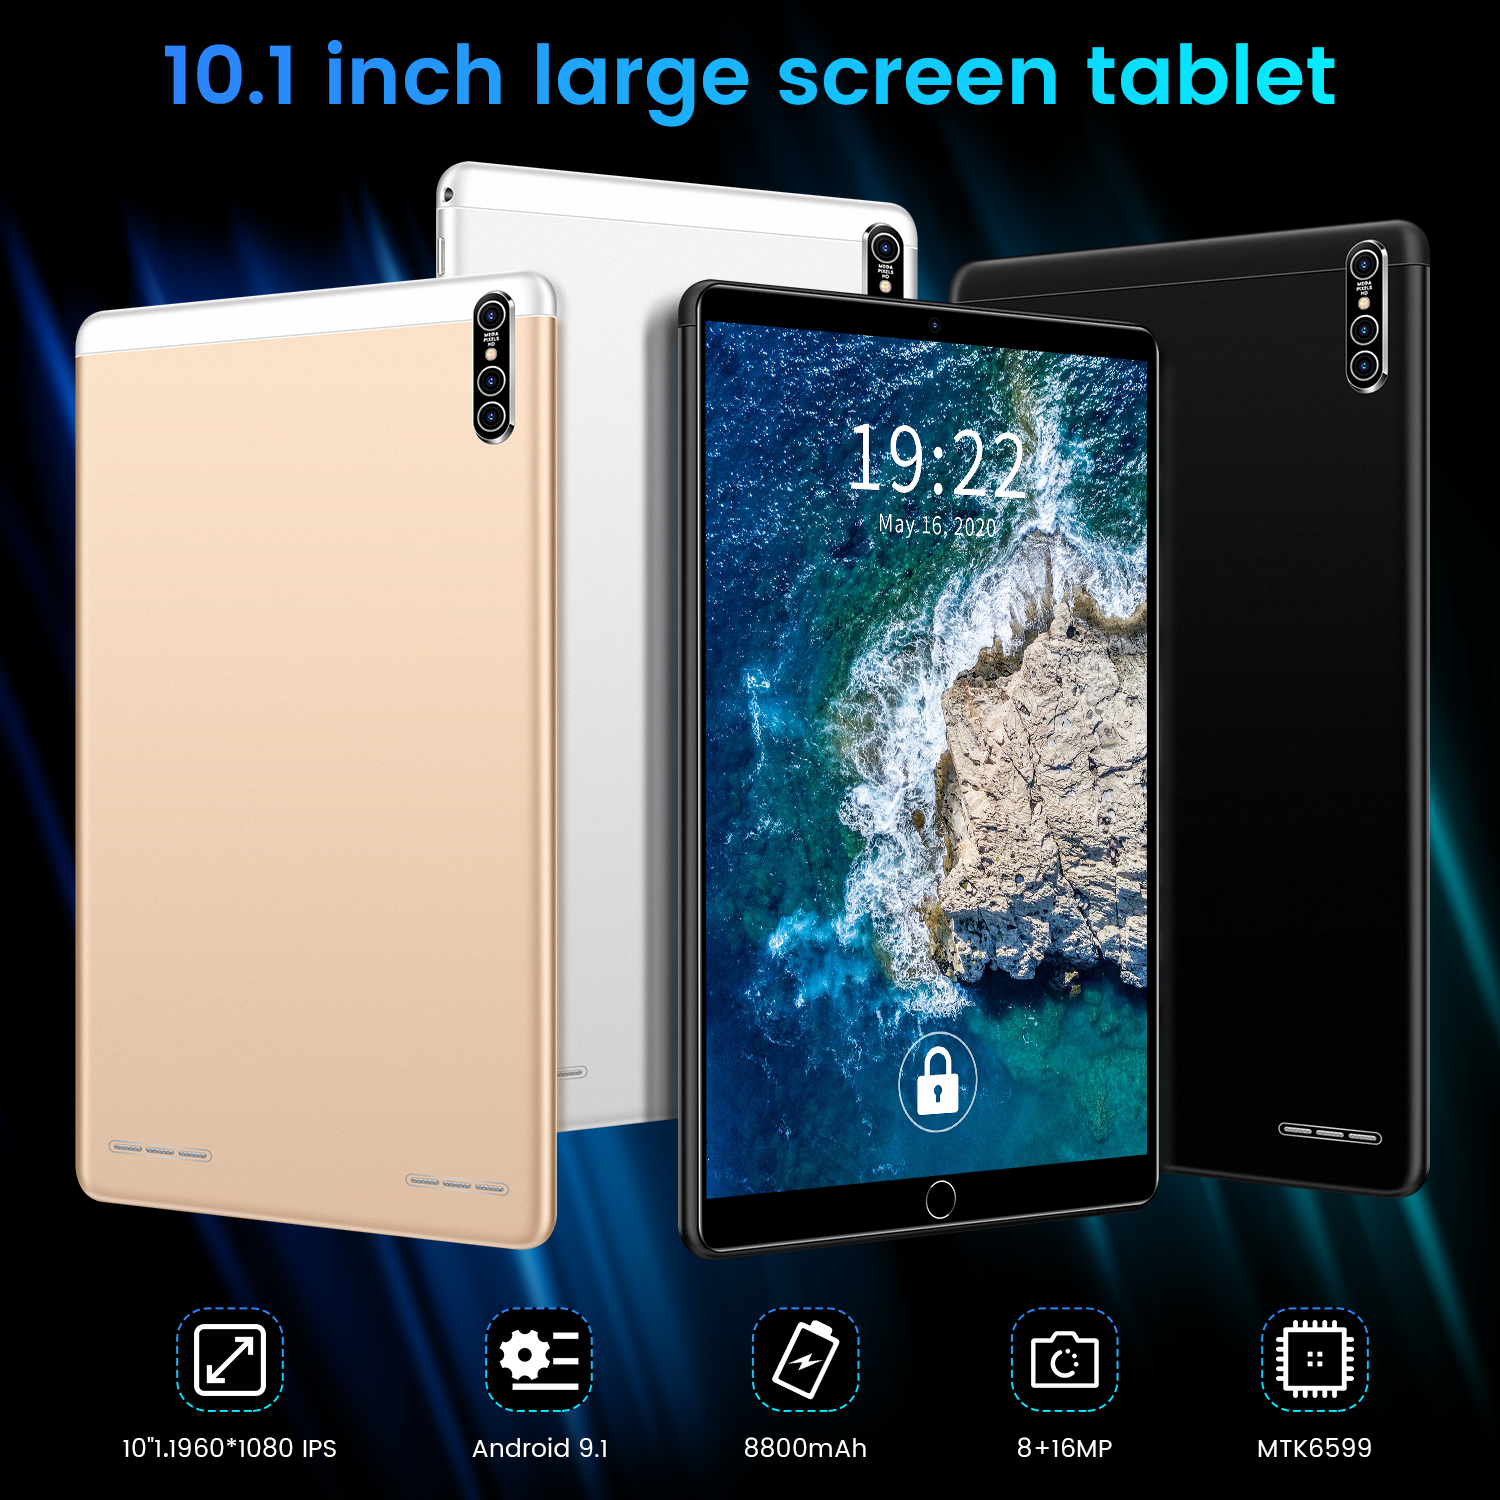 มุมมองเพิ่มเติมของสินค้า Realmi แท็บเล็ตพีซี android 9.1Tablet pc แท็บเล็ต 10.1 นิ้ว หน้าจอโค้ง 3D tablet ( 8G+256G) ซัมซุงแท็บเล็ตหน้าจอโค้ง แท็บเล็ตอัจฉริยะ แท็บเล็ตธุรกิจสิบหลั